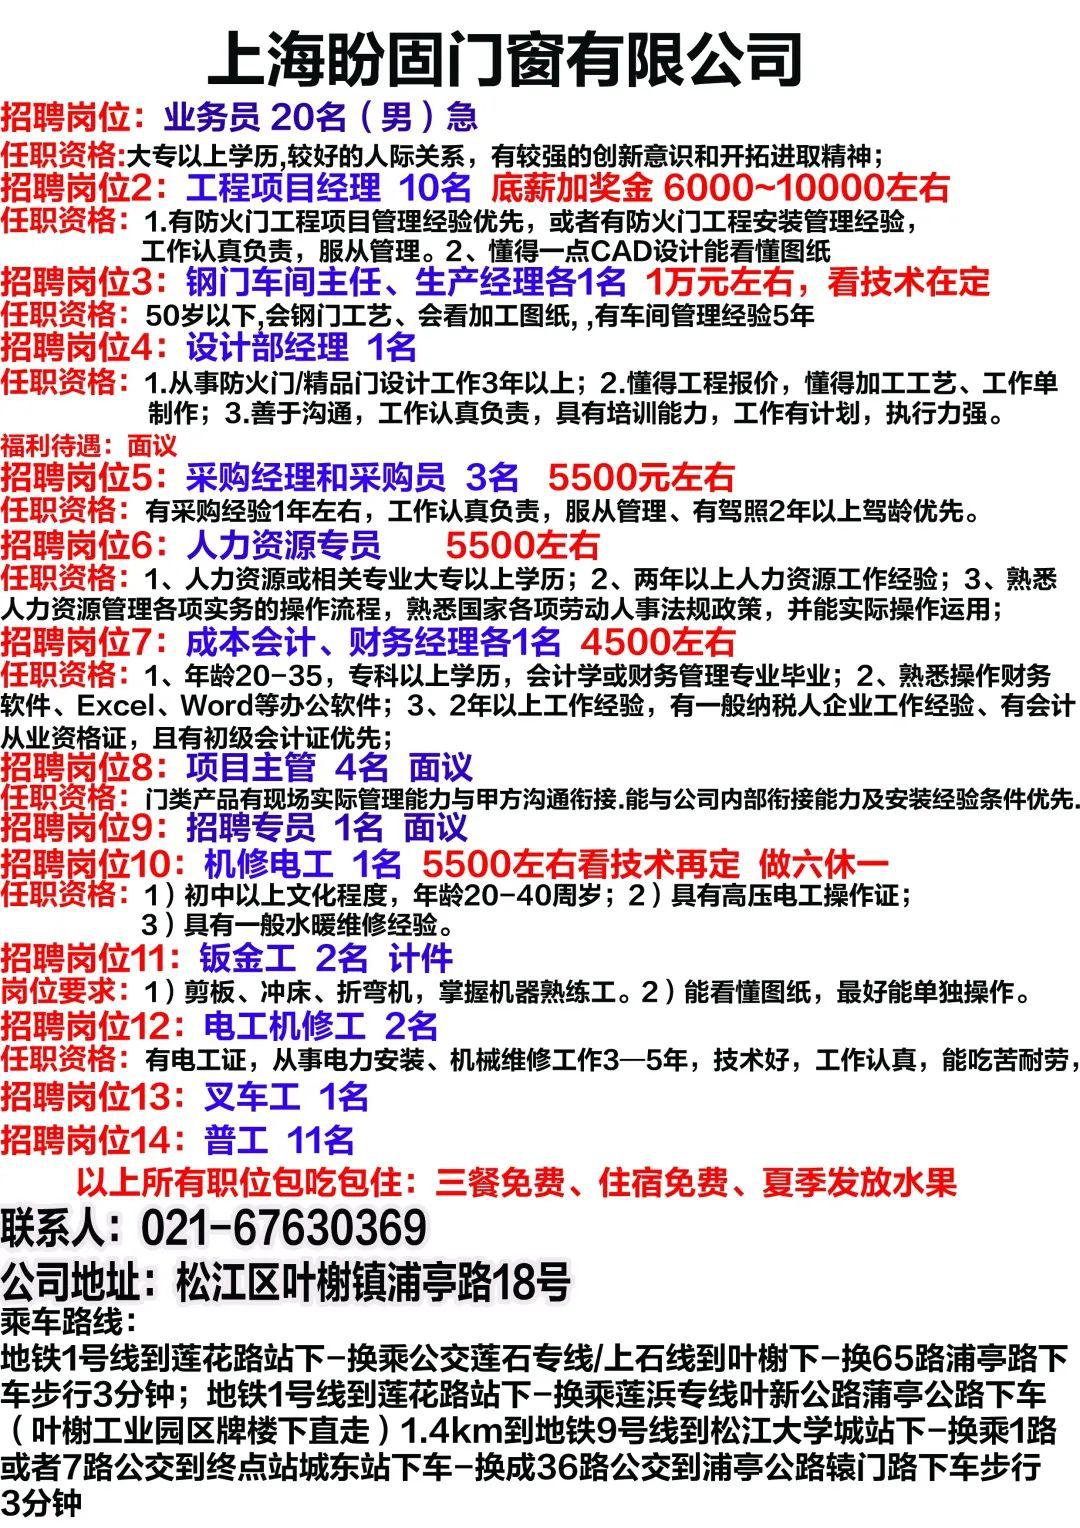 上海工作招聘信息_2016上海事业单位招聘信息汇总 3.7